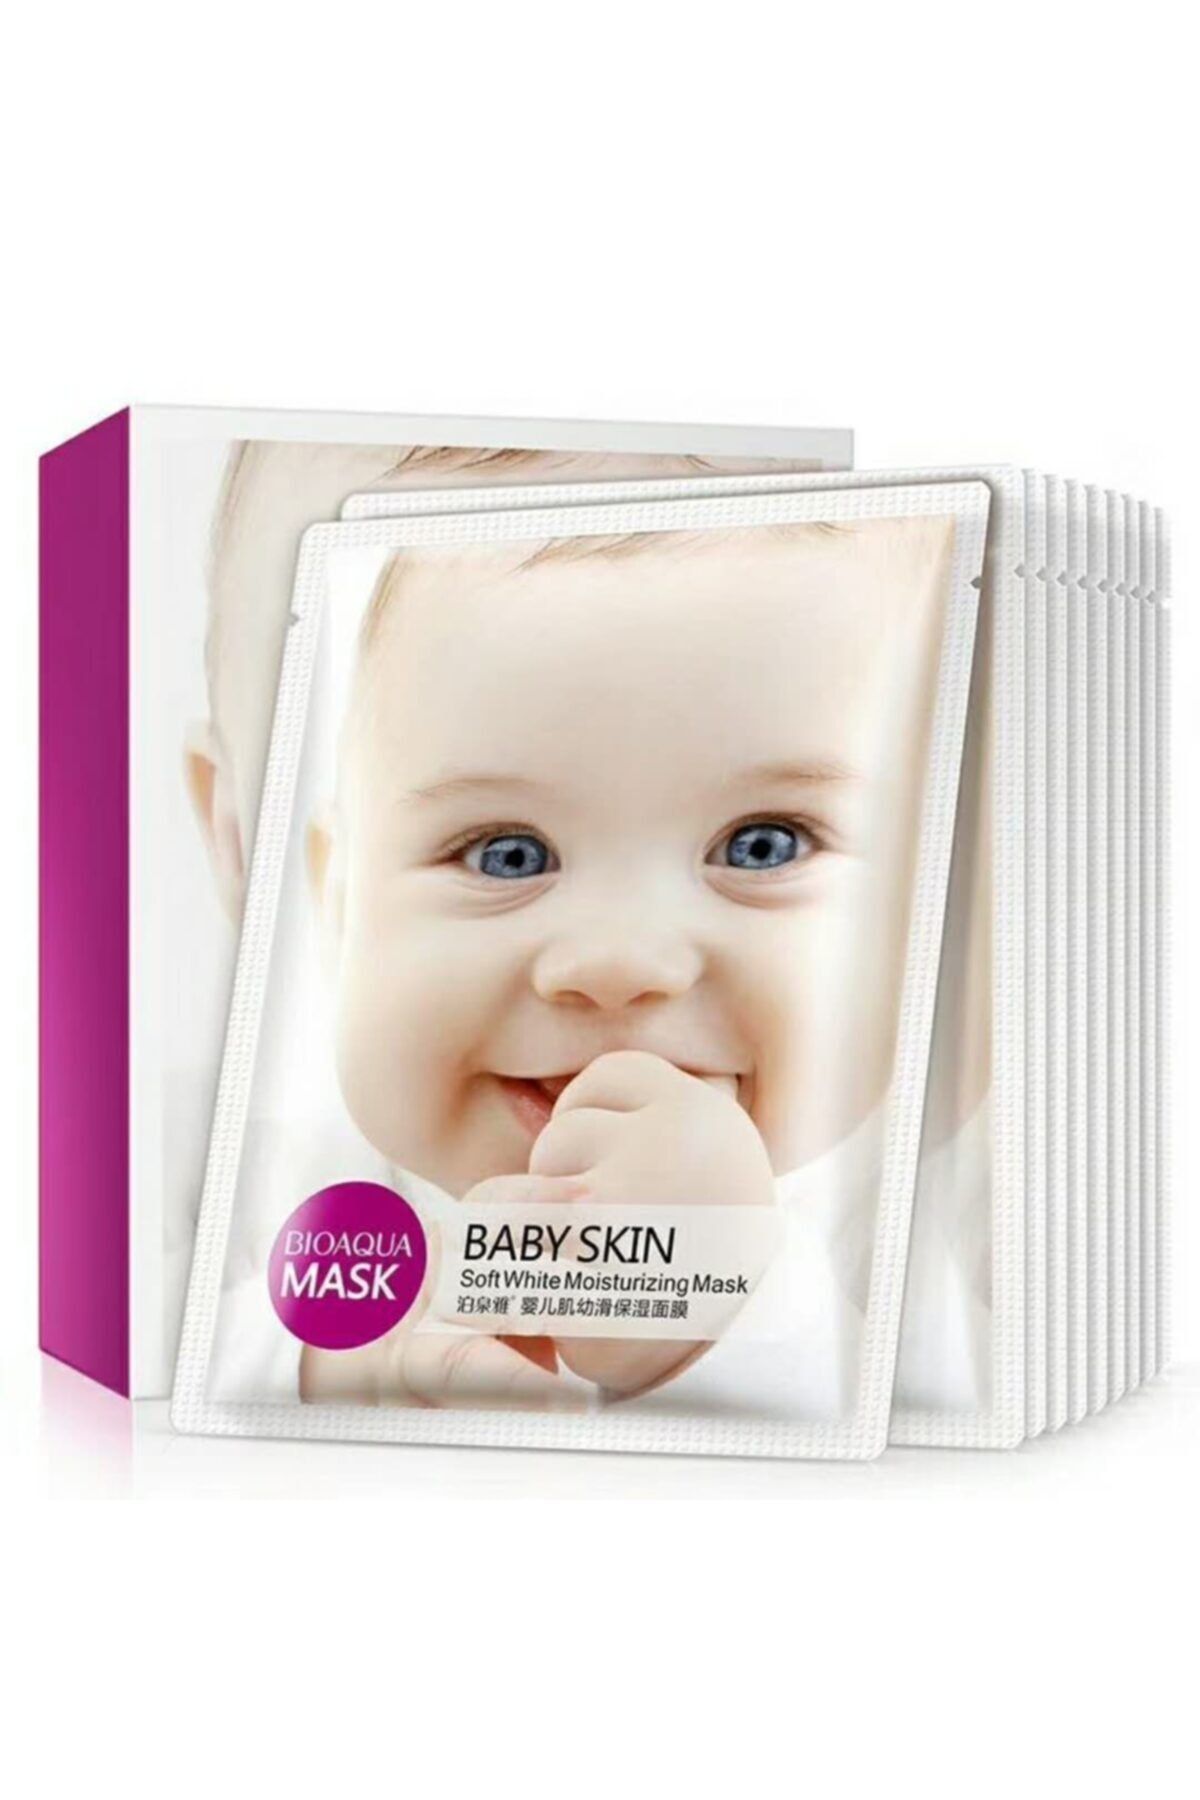 BIOAQUA Baby Skin Bebeksi Pürüzsüzlük 1 Aylık Cilt Bakım Kürü 30 gr X 10 adet